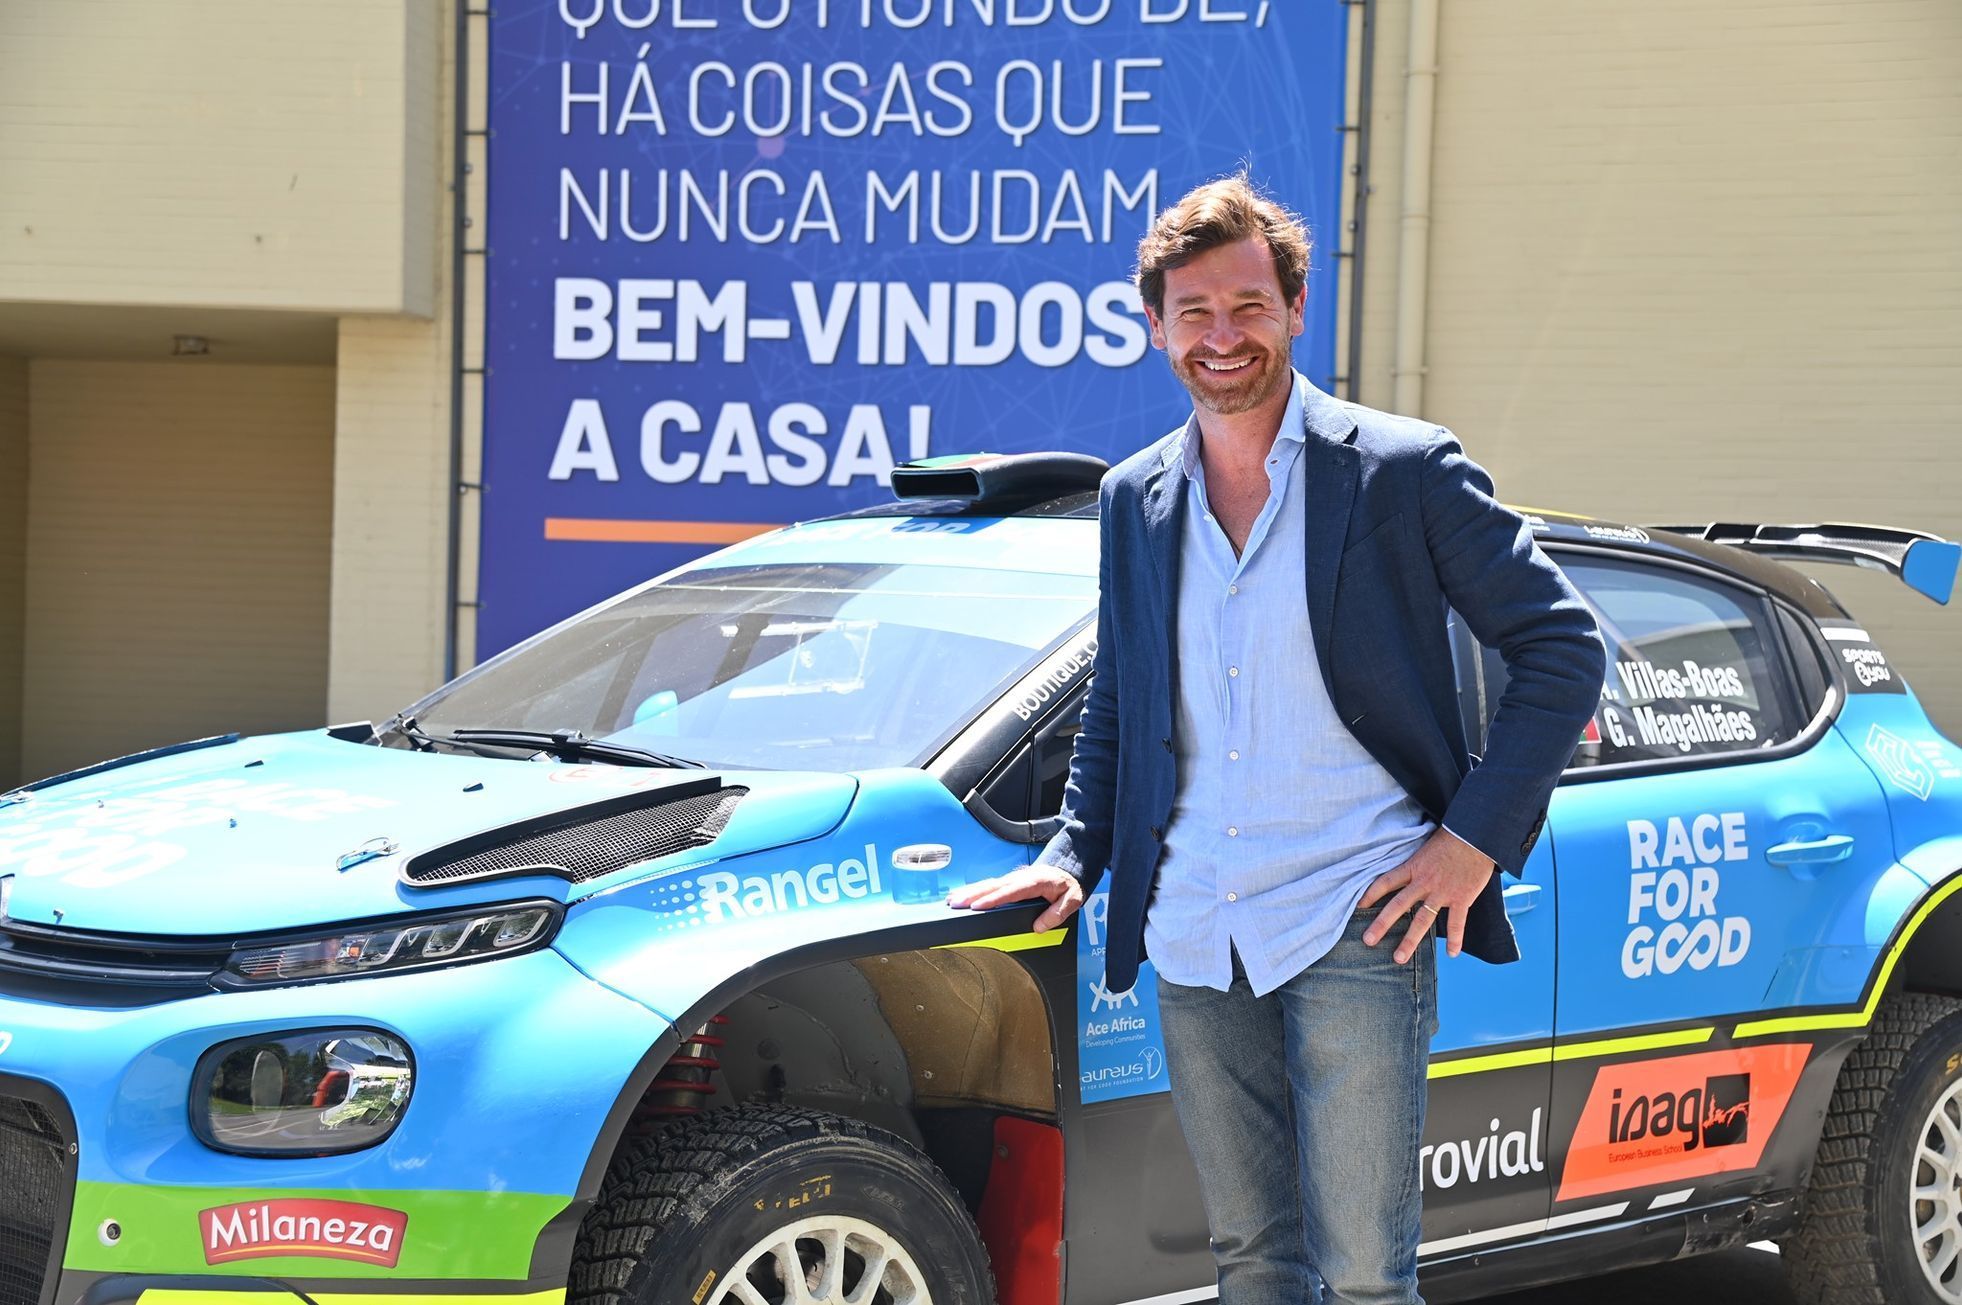 André Villas-Boas pózuje vedle Citroënu C3 Rally2 v barvách jeho nadace Race for Good